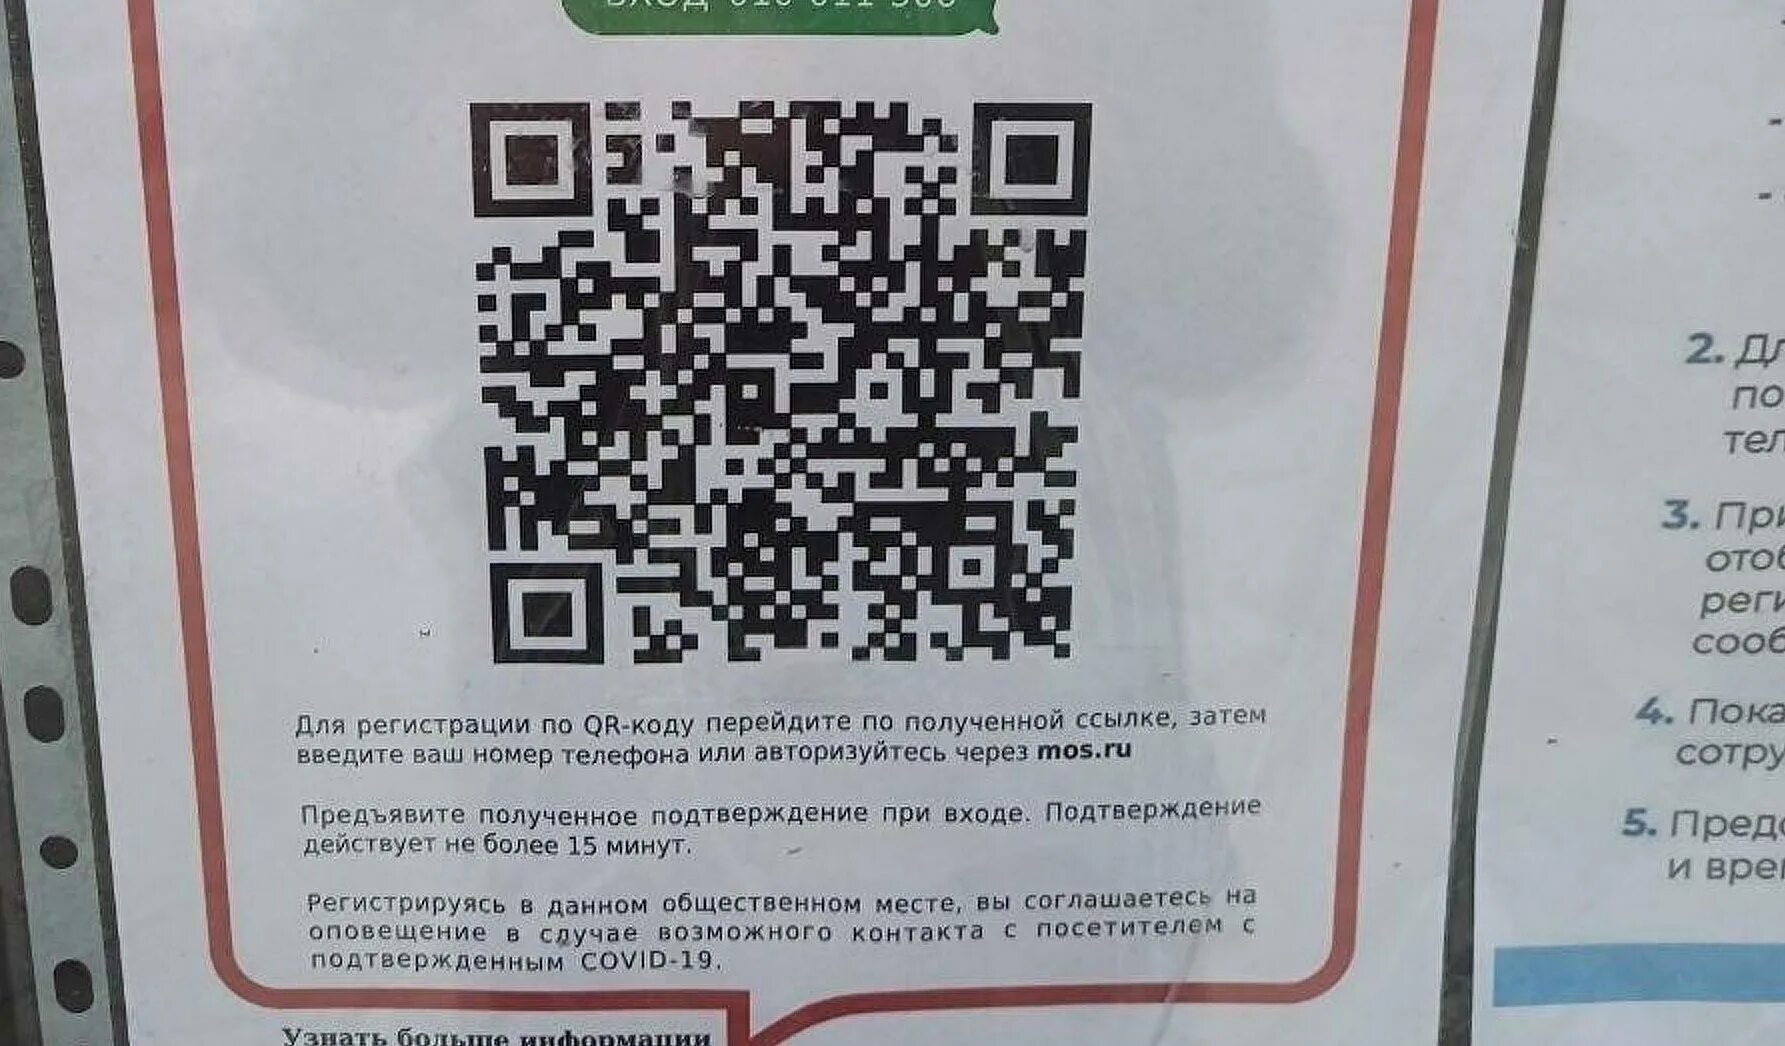 Qr код вднх. QR код. Таблички с QR кодами. Российский QR код. Плакат с QR кодом.